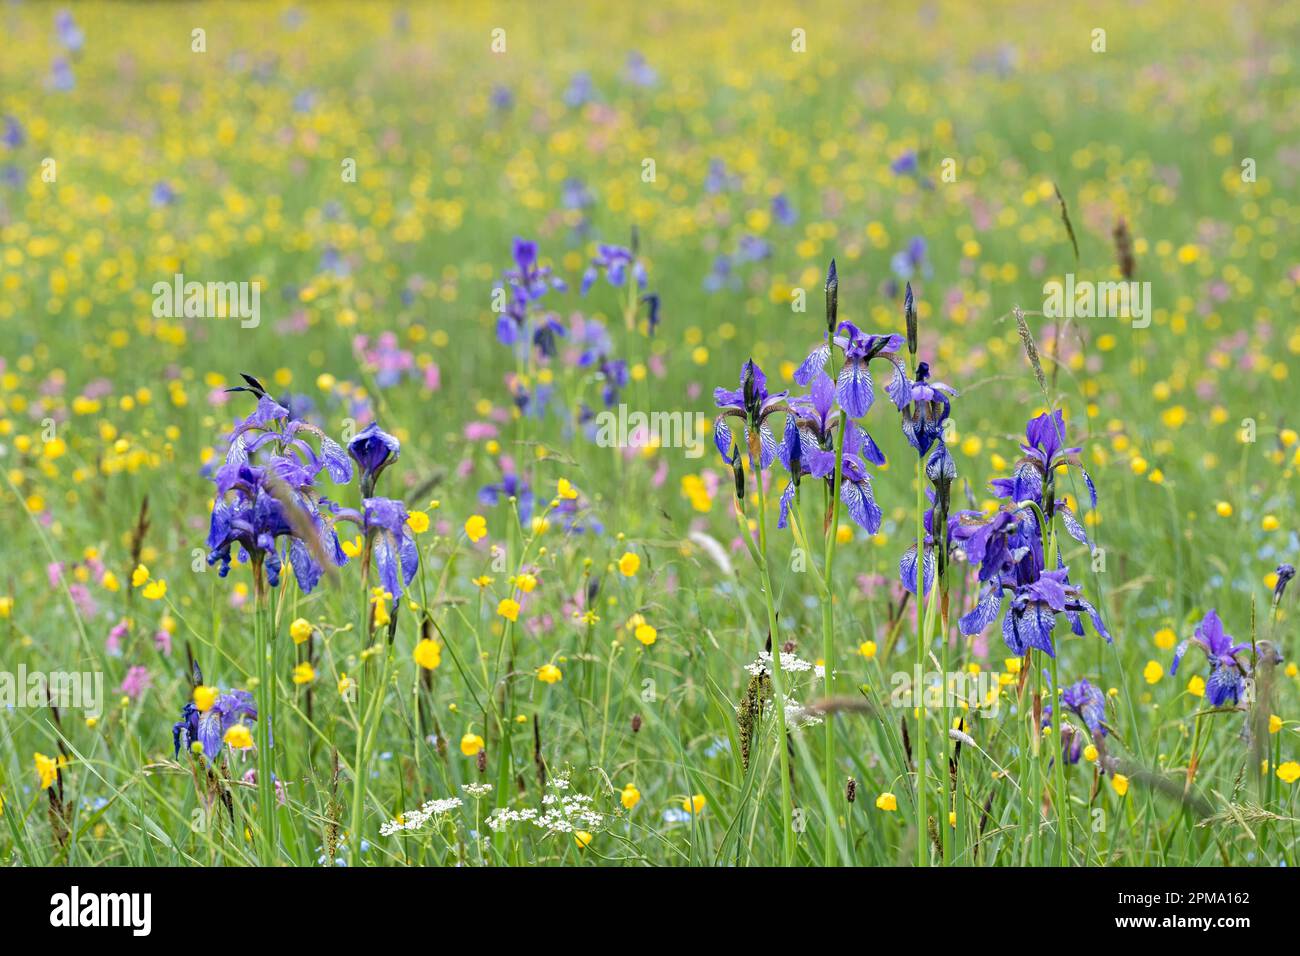 Iris blue (Iris sibirica) Stock Photo